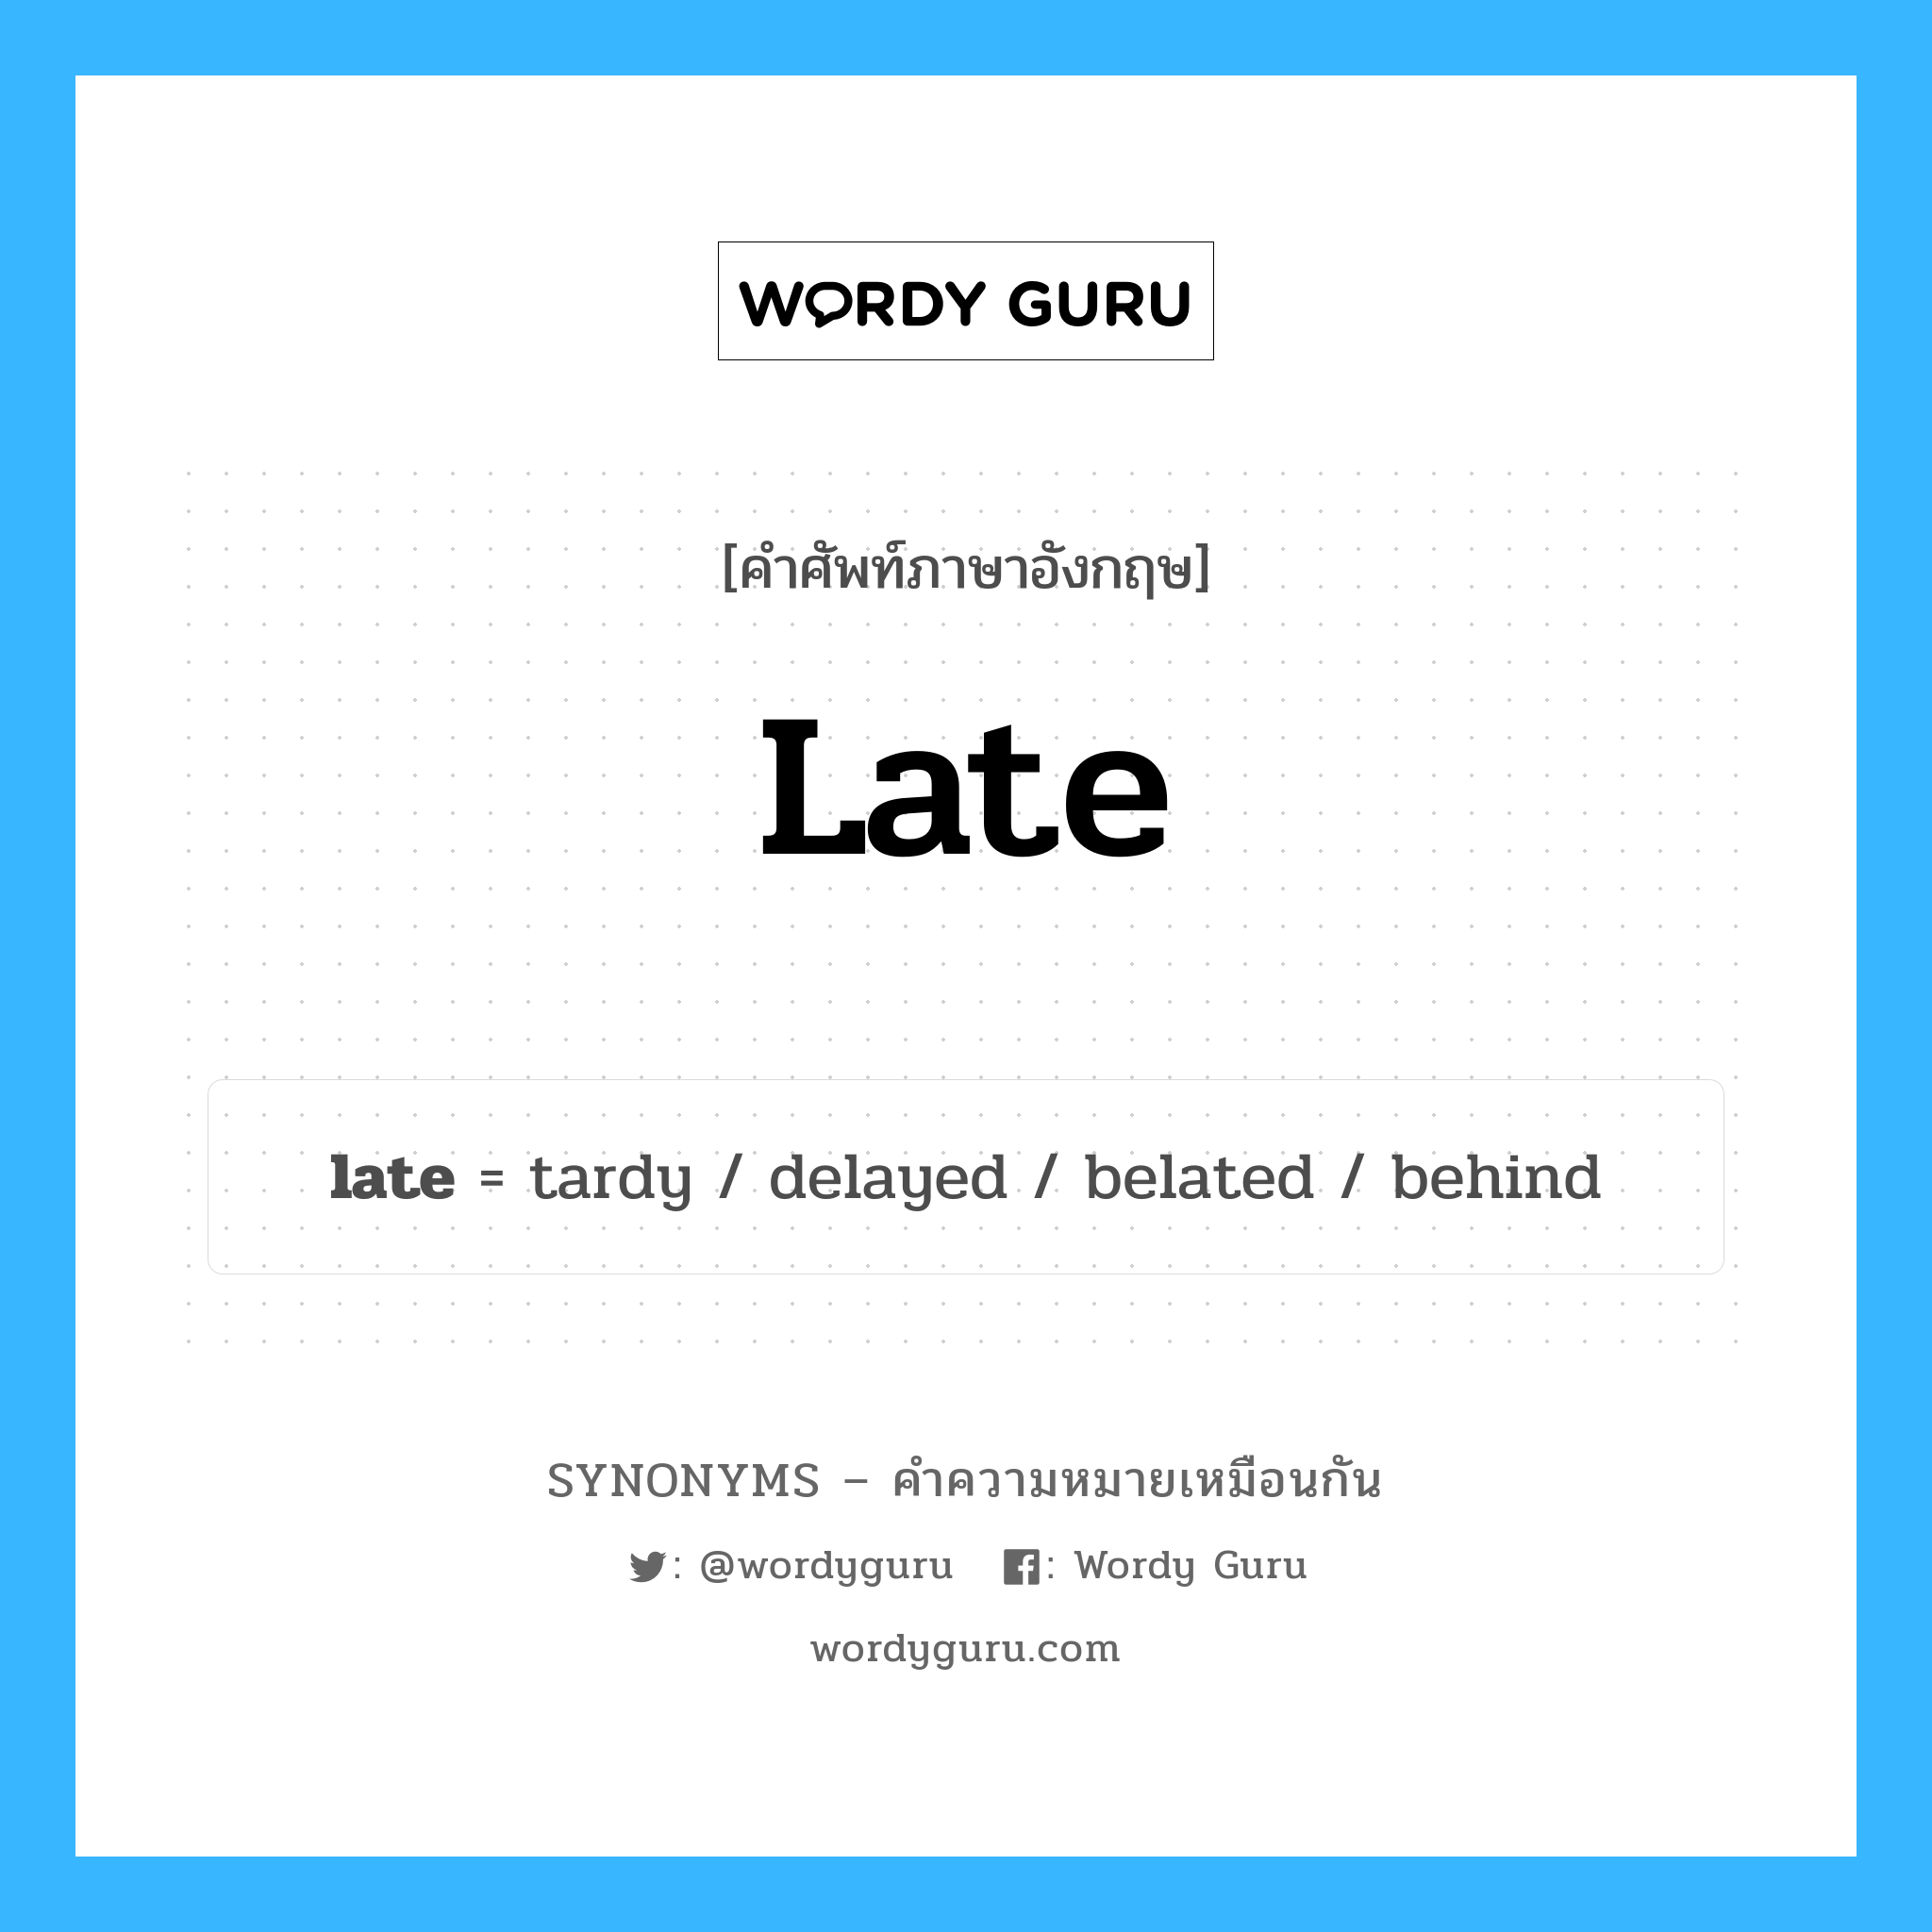 late เป็นหนึ่งใน behind และมีคำอื่น ๆ อีกดังนี้, คำศัพท์ภาษาอังกฤษ late ความหมายคล้ายกันกับ behind แปลว่า เบื้องหลัง หมวด behind